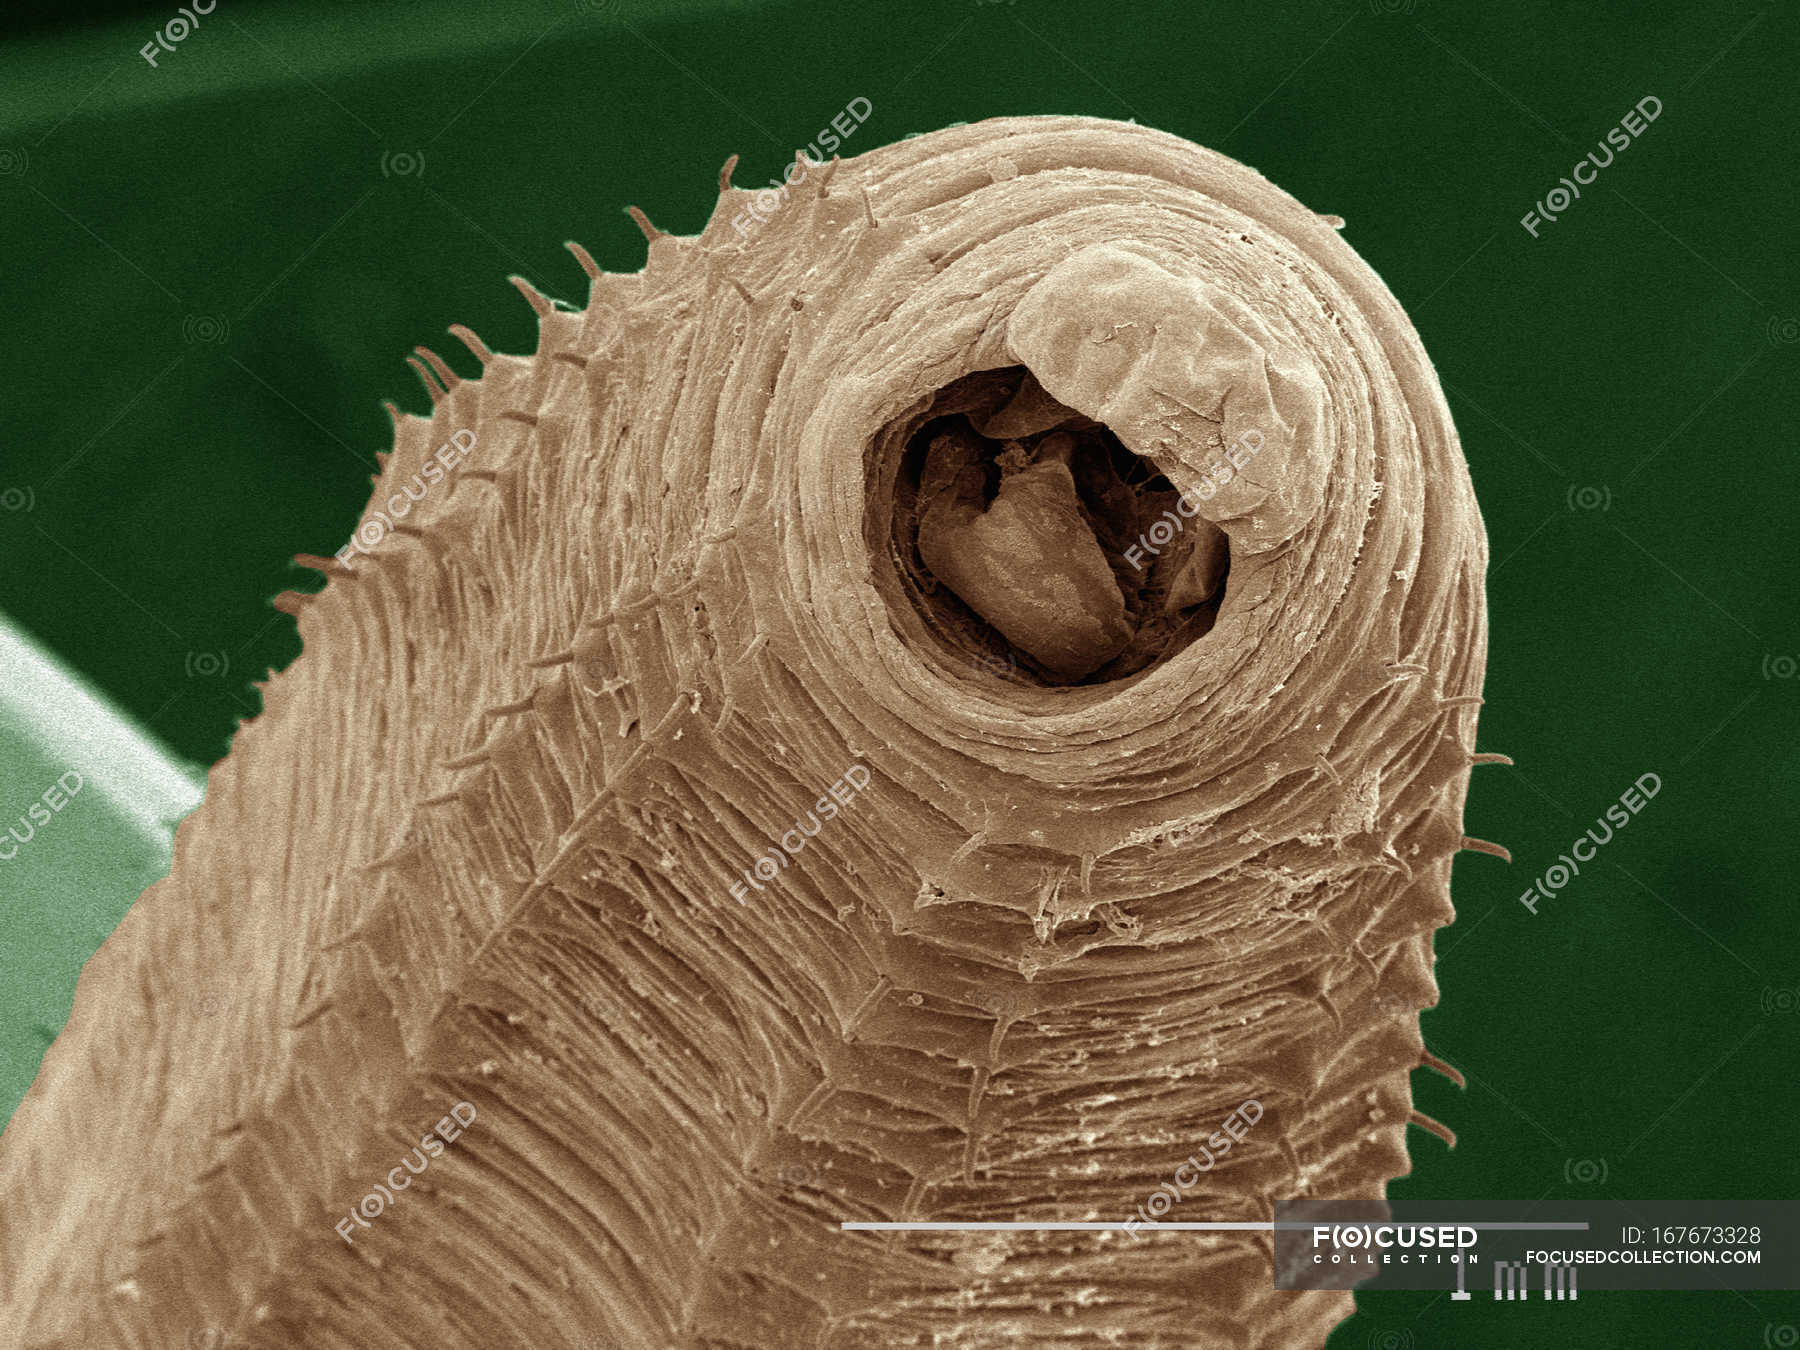 Микрофотография дождевого червя